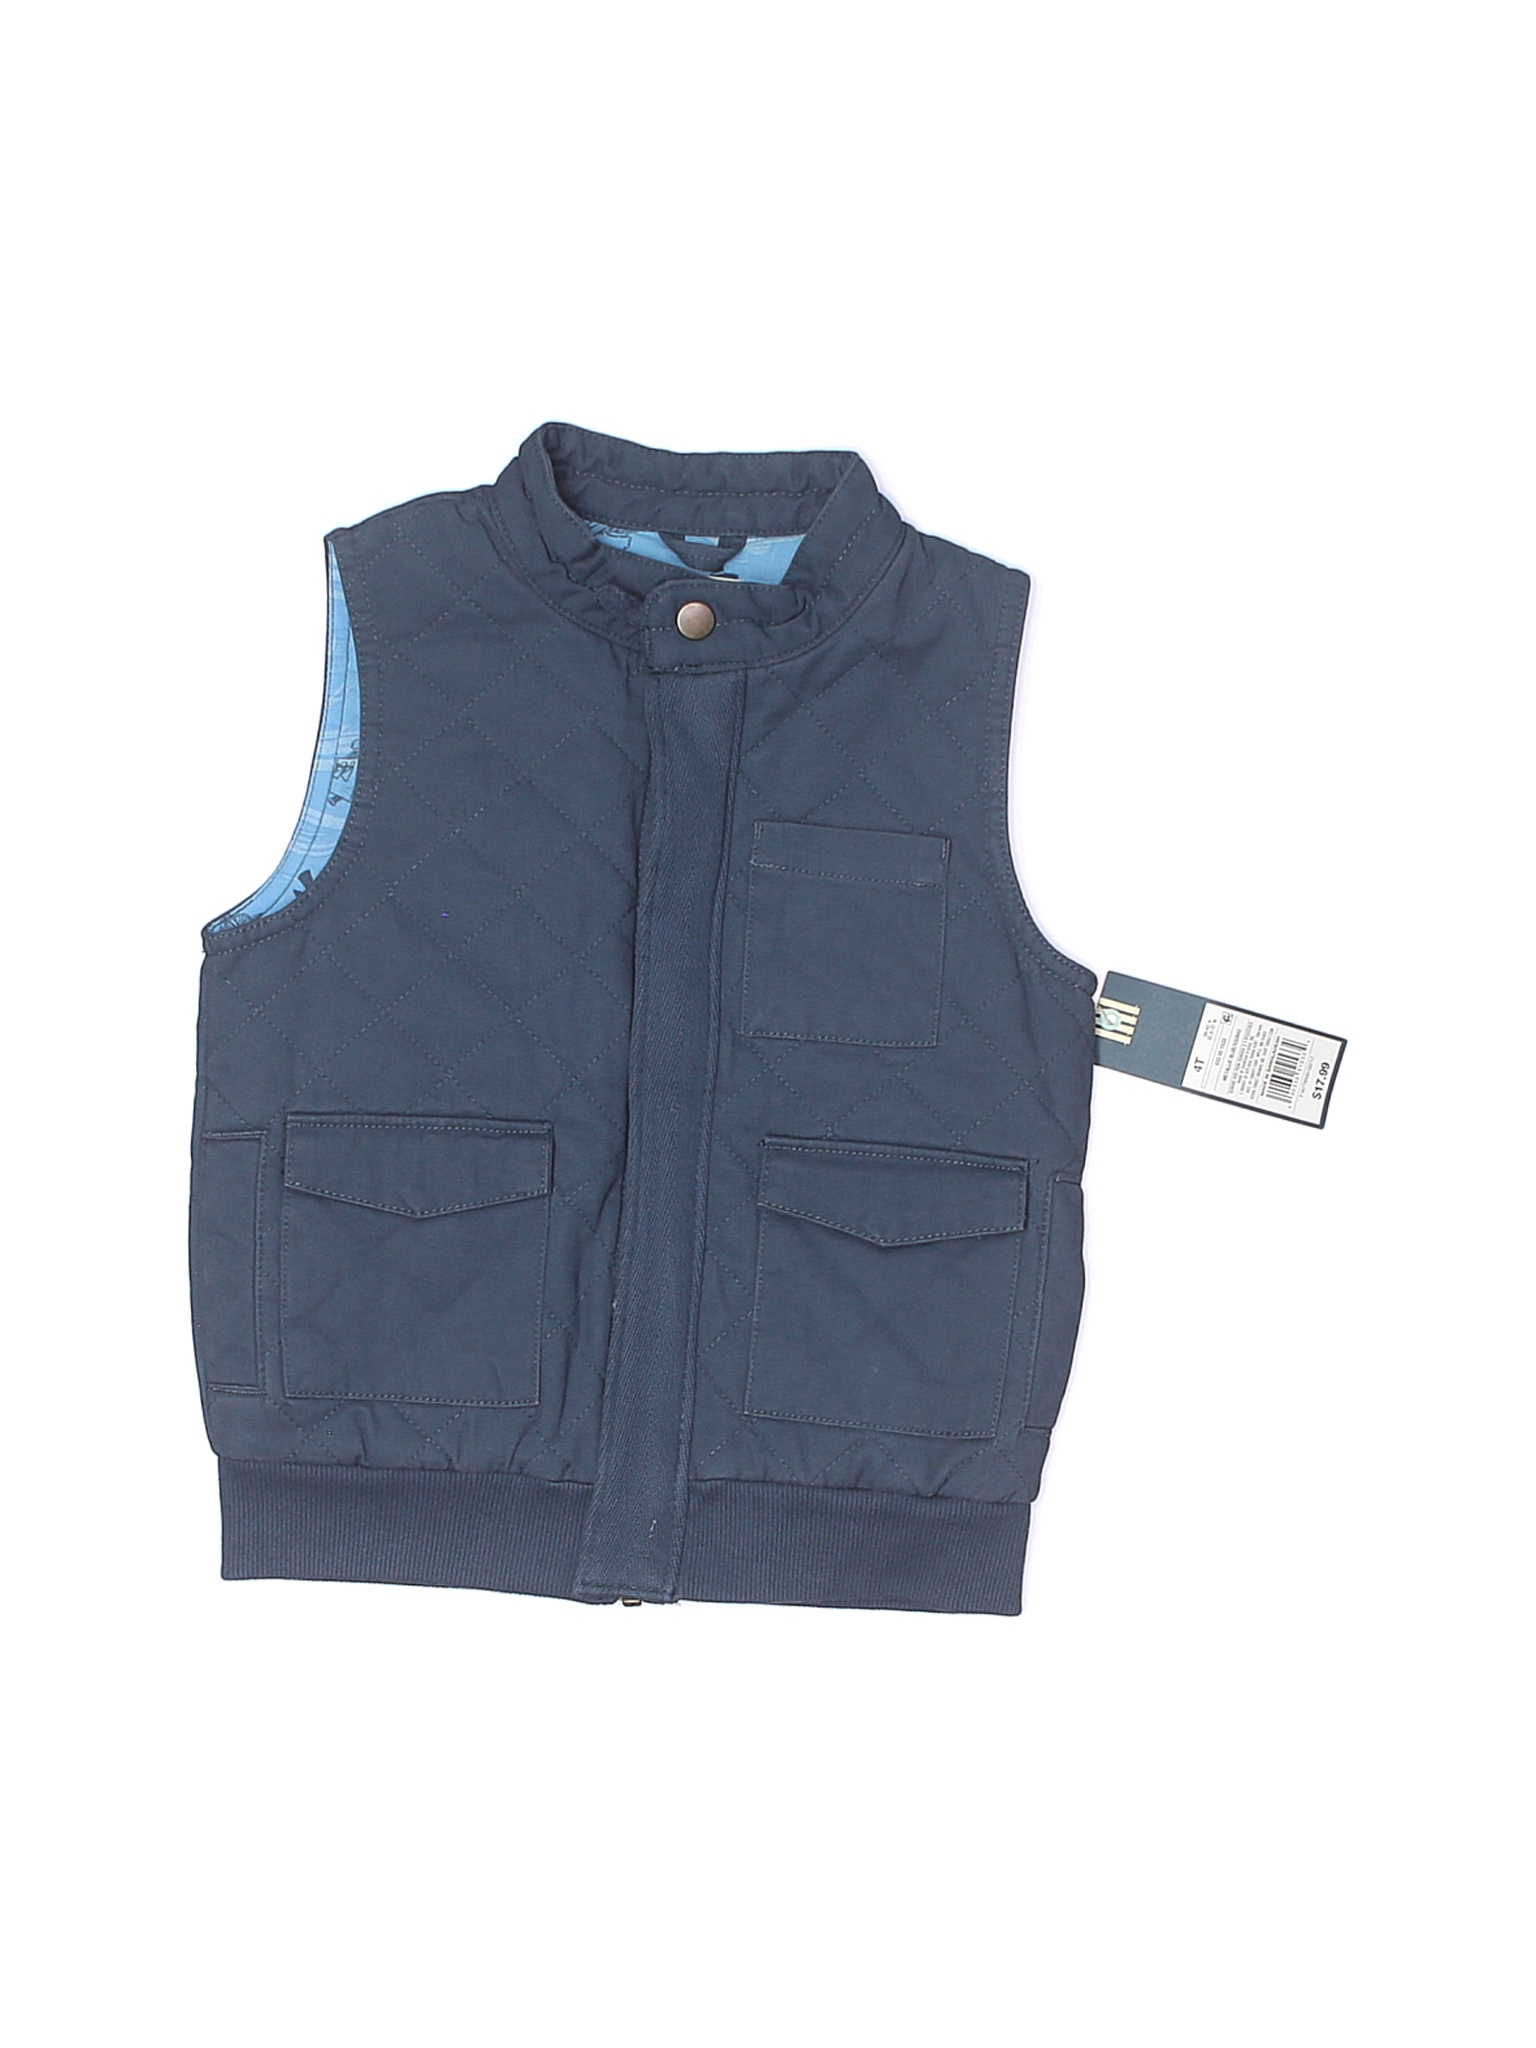 NWT OshKosh B'gosh Boys Blue Vest 4T | eBay